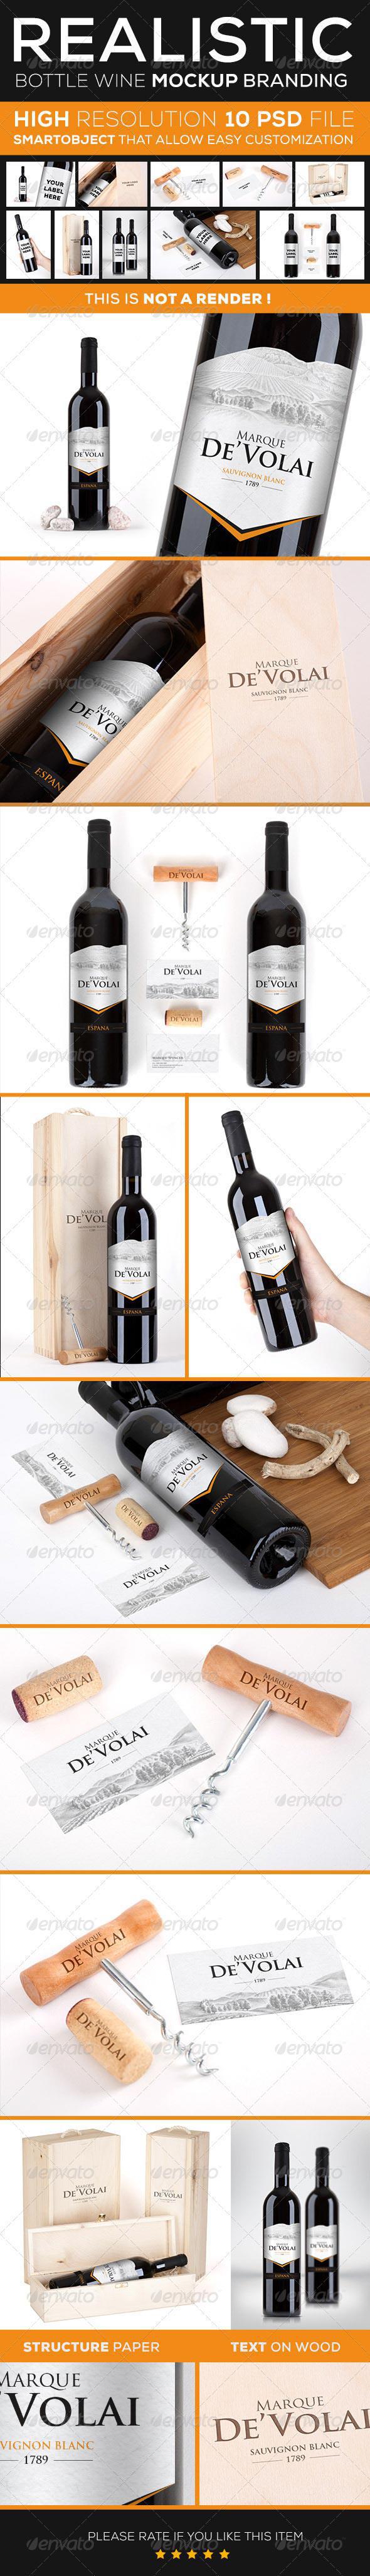 Wine Bottle Branding Mock Up